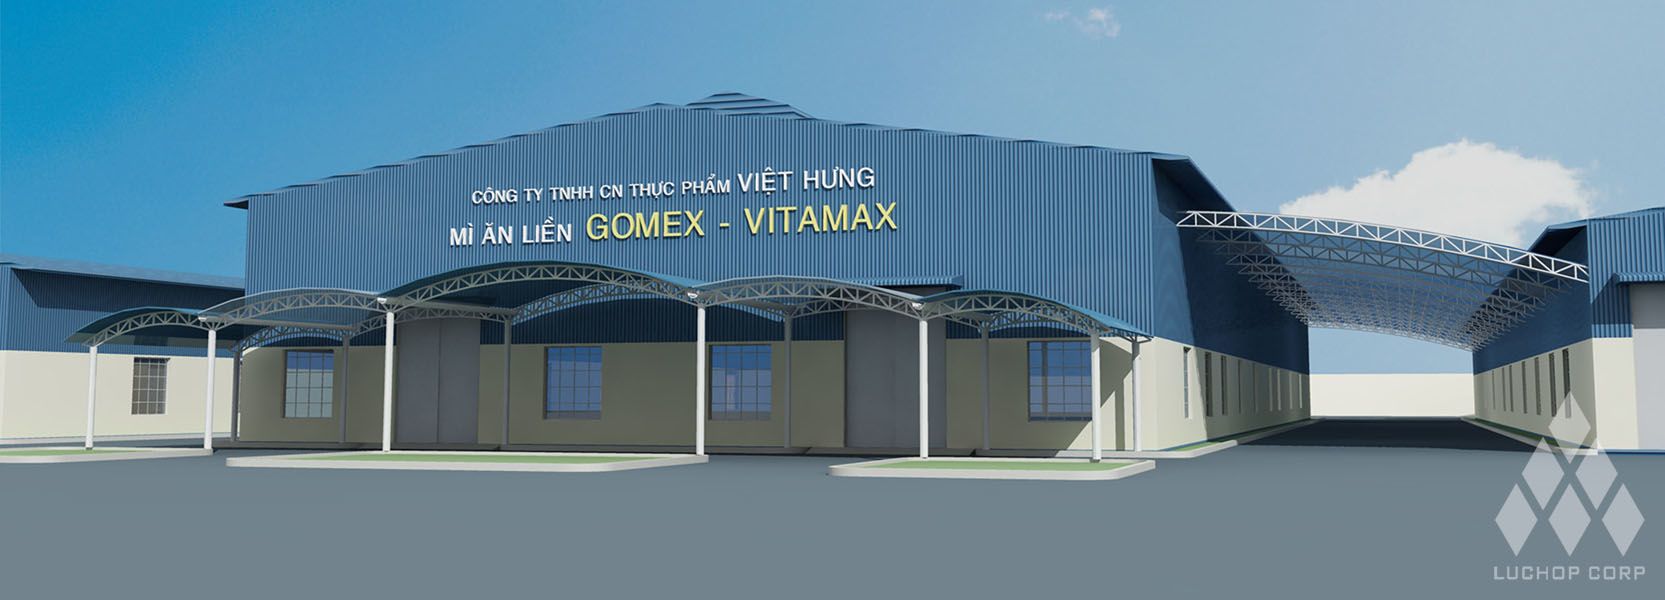 Nhà xưởng GOMEX - VITAMAX